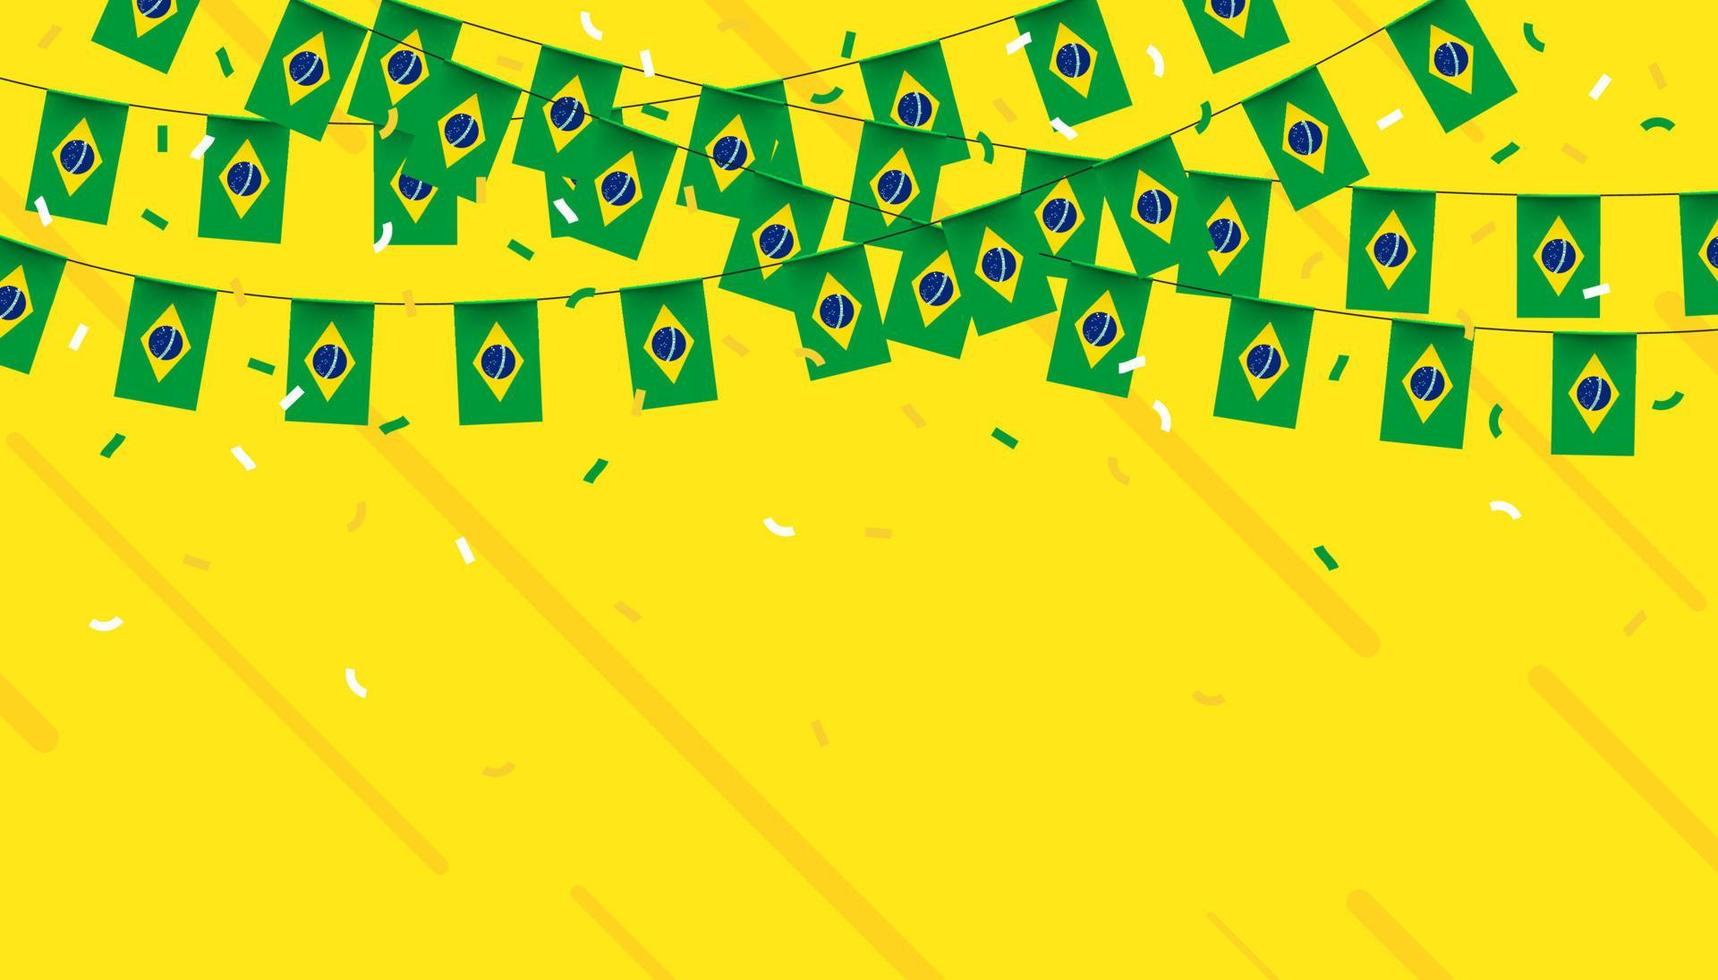 Brazilië viering vlaggedoek vlaggen met confetti en linten Aan geel achtergrond. vector illustratie.